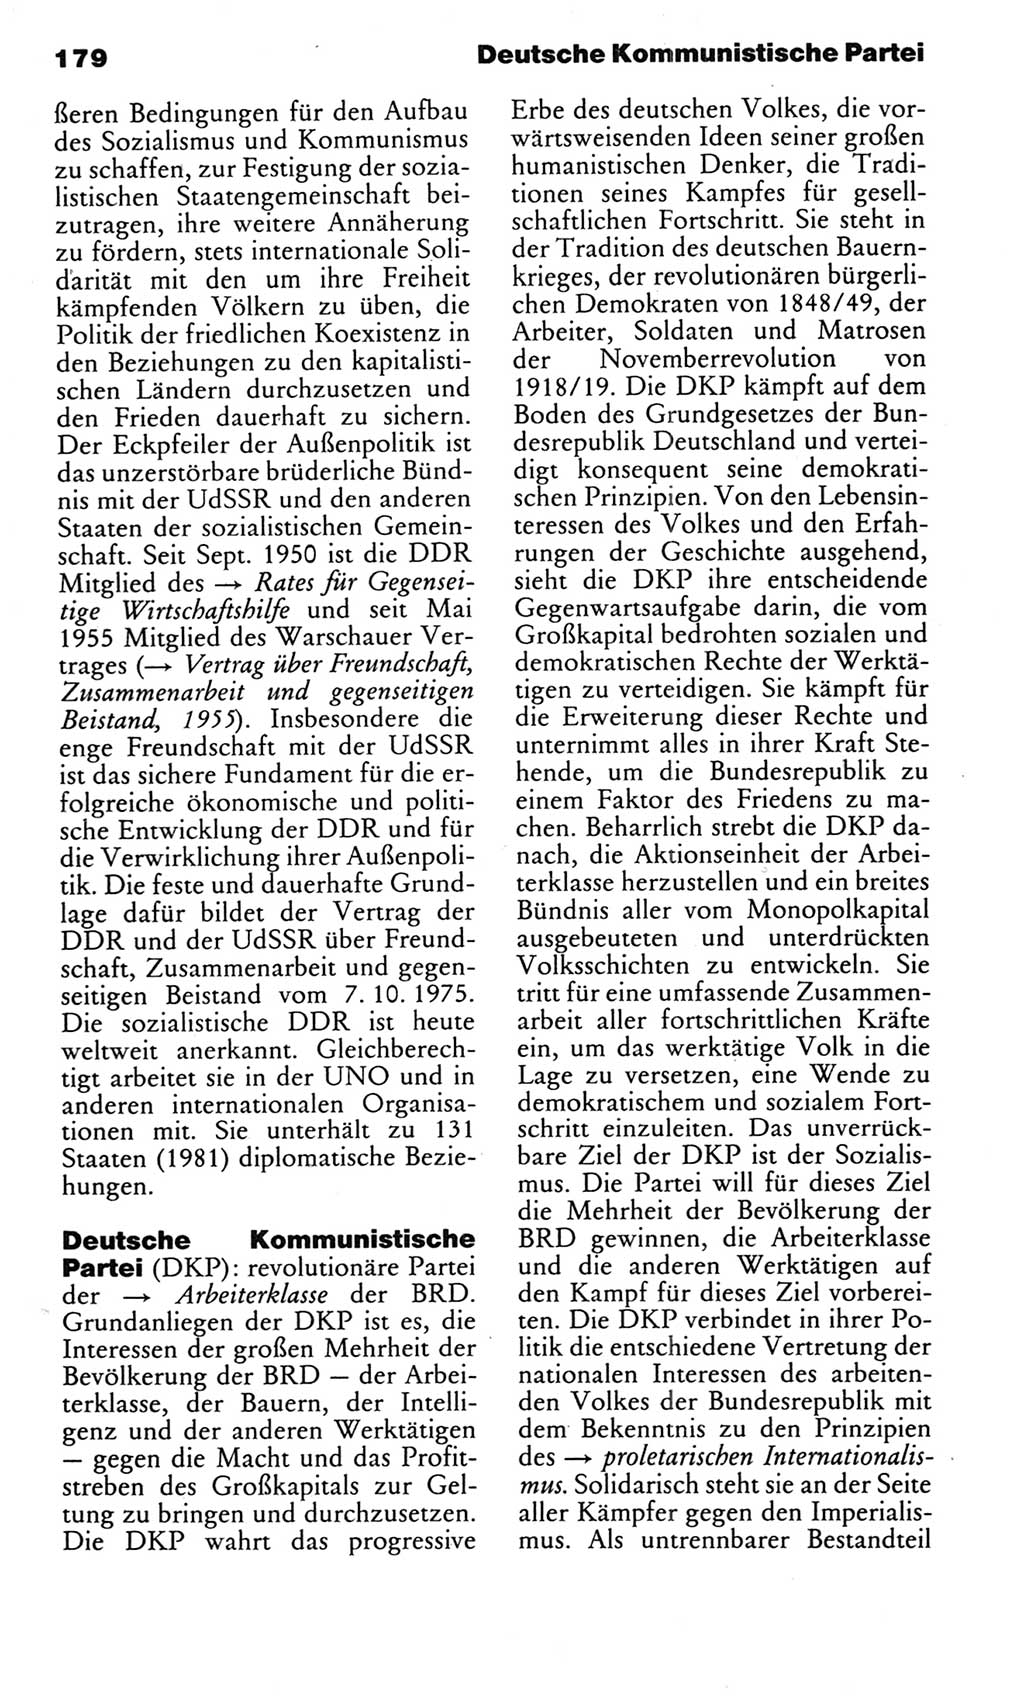 Kleines politisches Wörterbuch [Deutsche Demokratische Republik (DDR)] 1983, Seite 179 (Kl. pol. Wb. DDR 1983, S. 179)